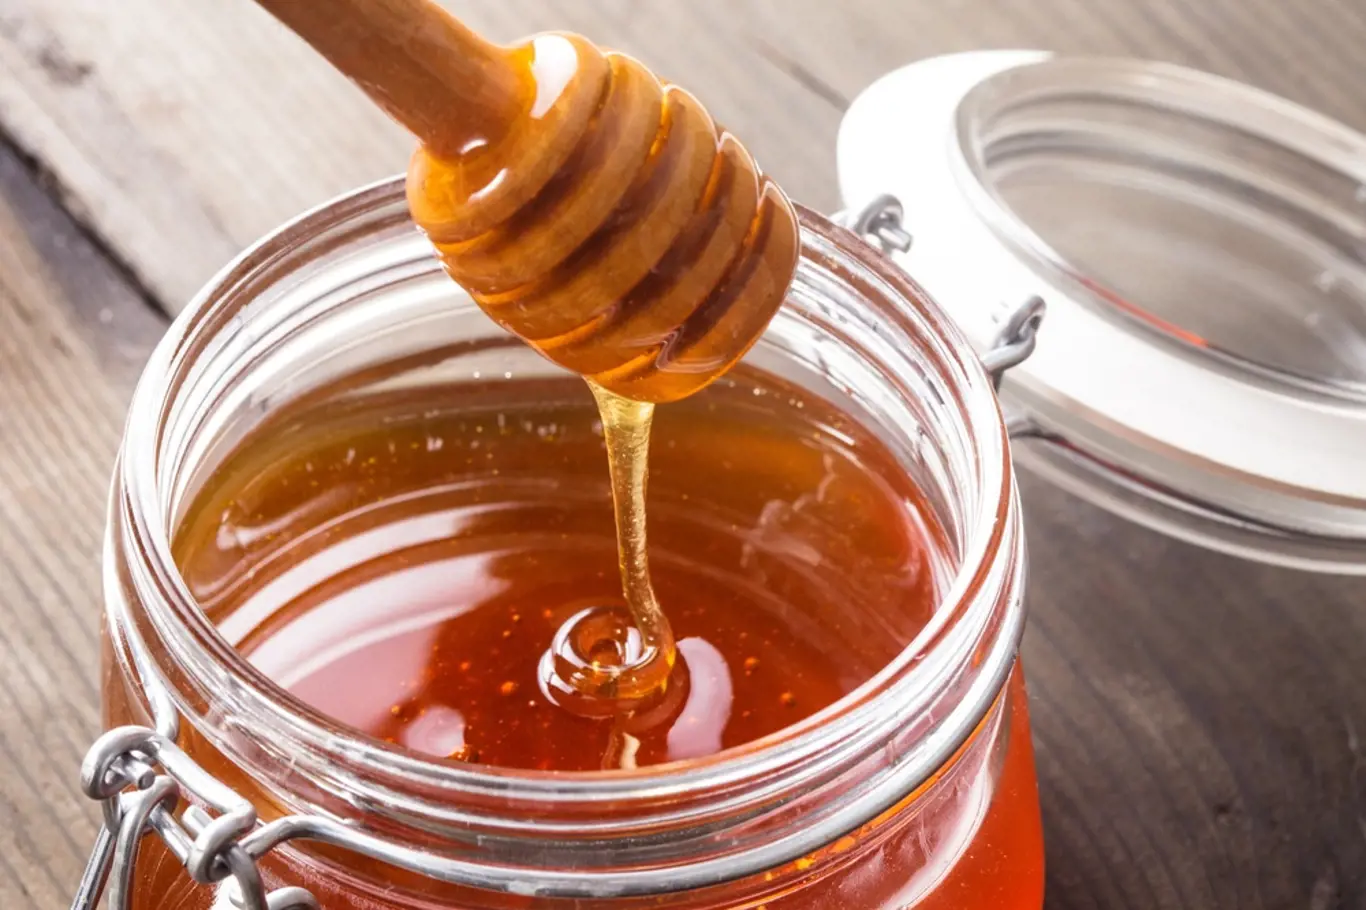 Med je nejen chutný, ale také zdravý.